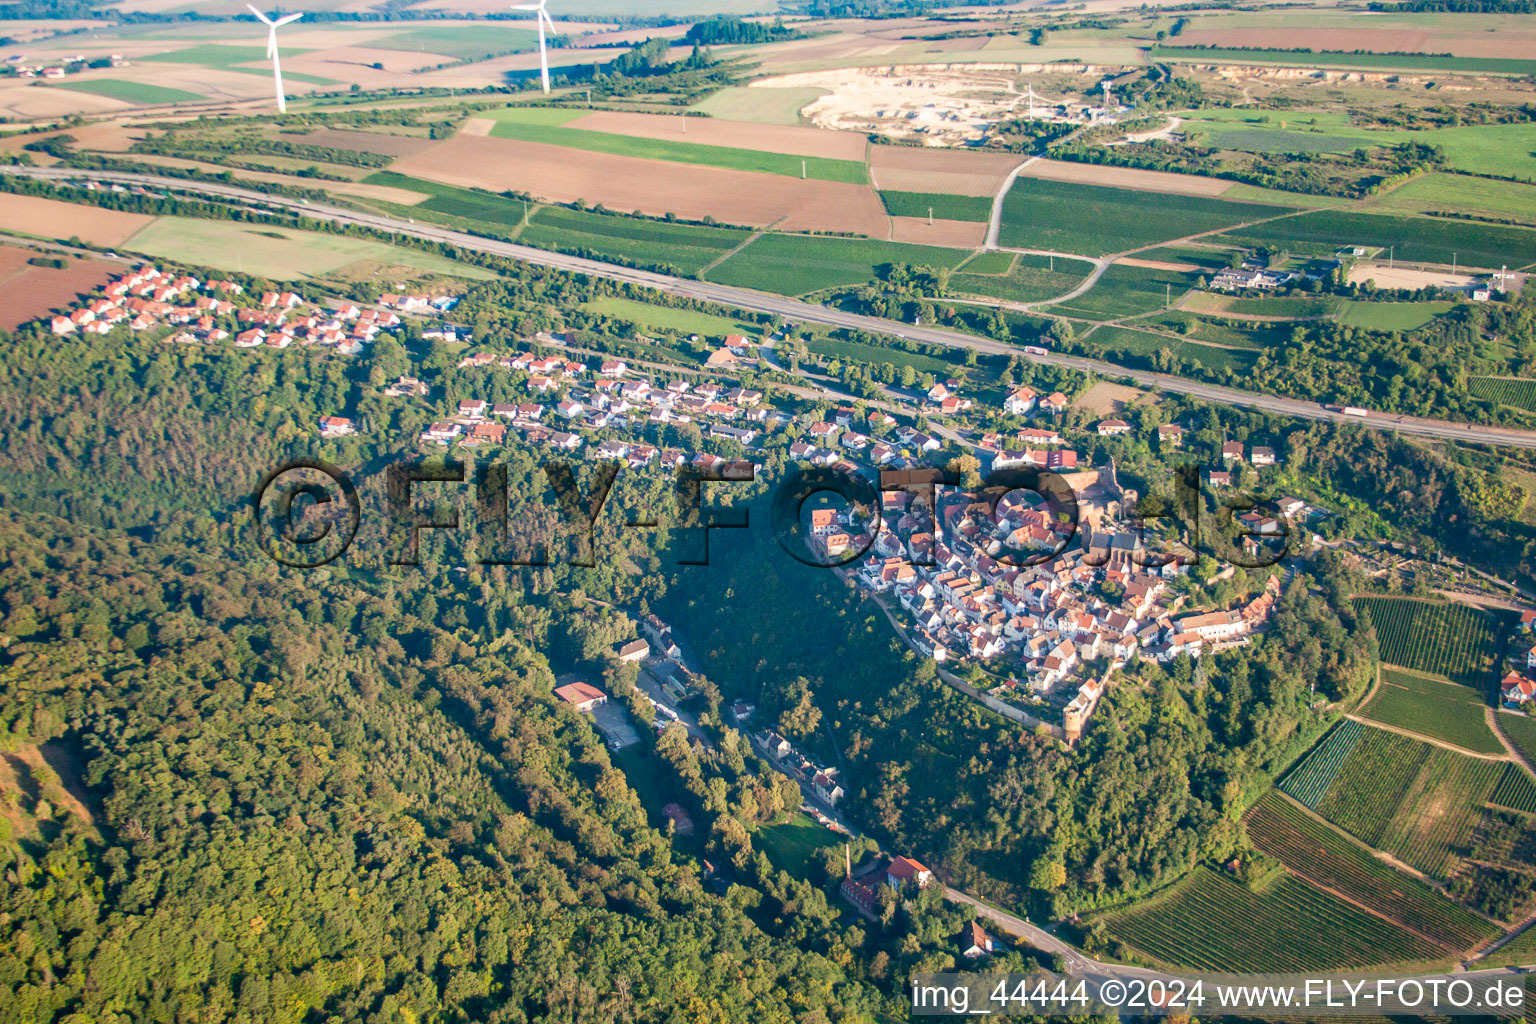 Neuleiningen im Bundesland Rheinland-Pfalz, Deutschland aus der Luft betrachtet